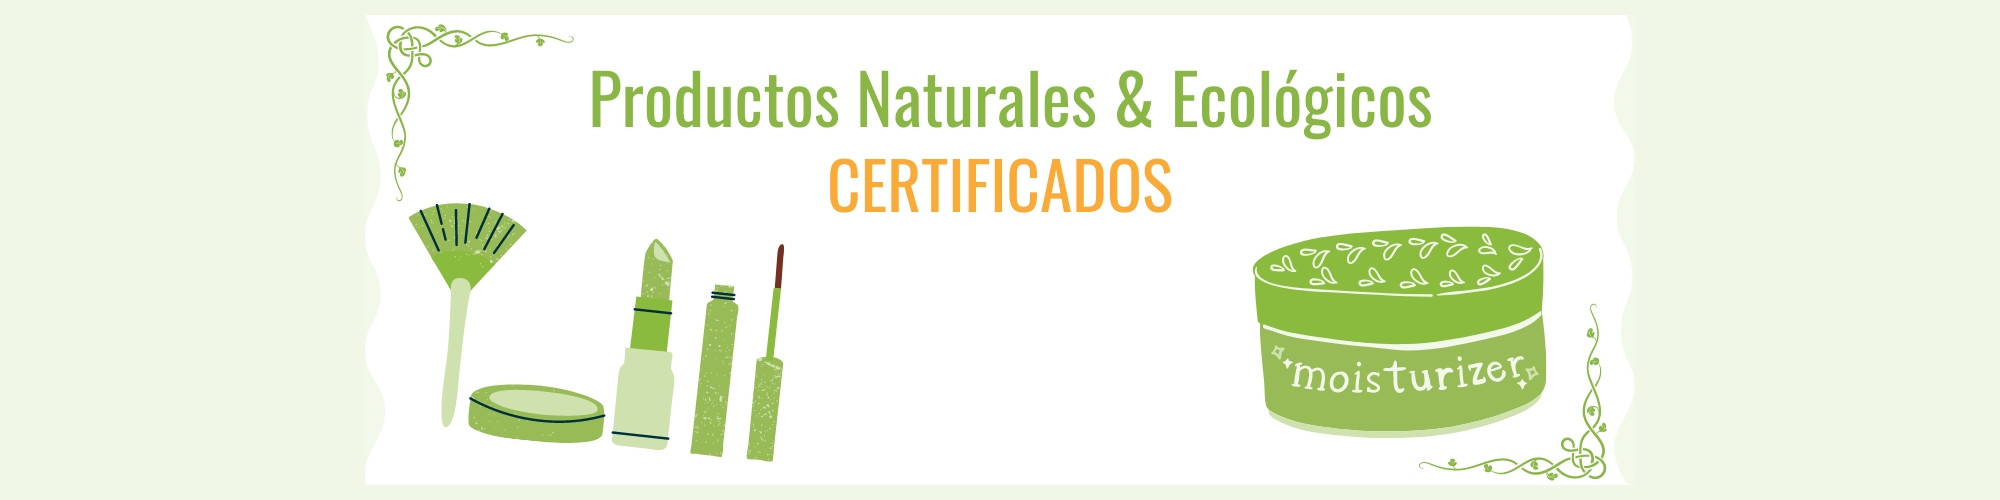 Cosmética Natural y ecológica certificada